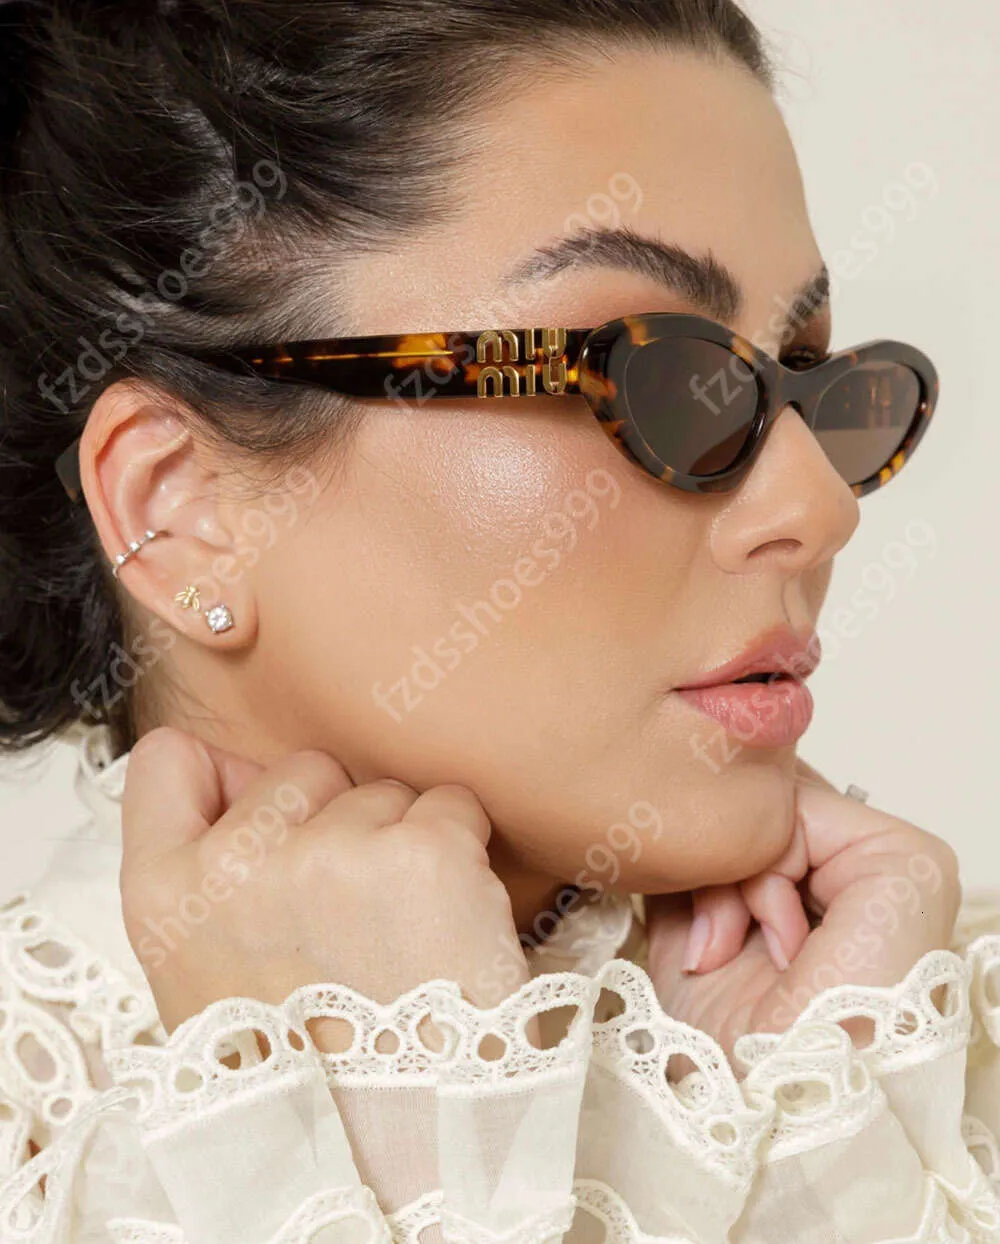 Mumu SMU09Y Rechteck Sonnenbrille Damenkatze Augendesigner Brille mit Gehäuse